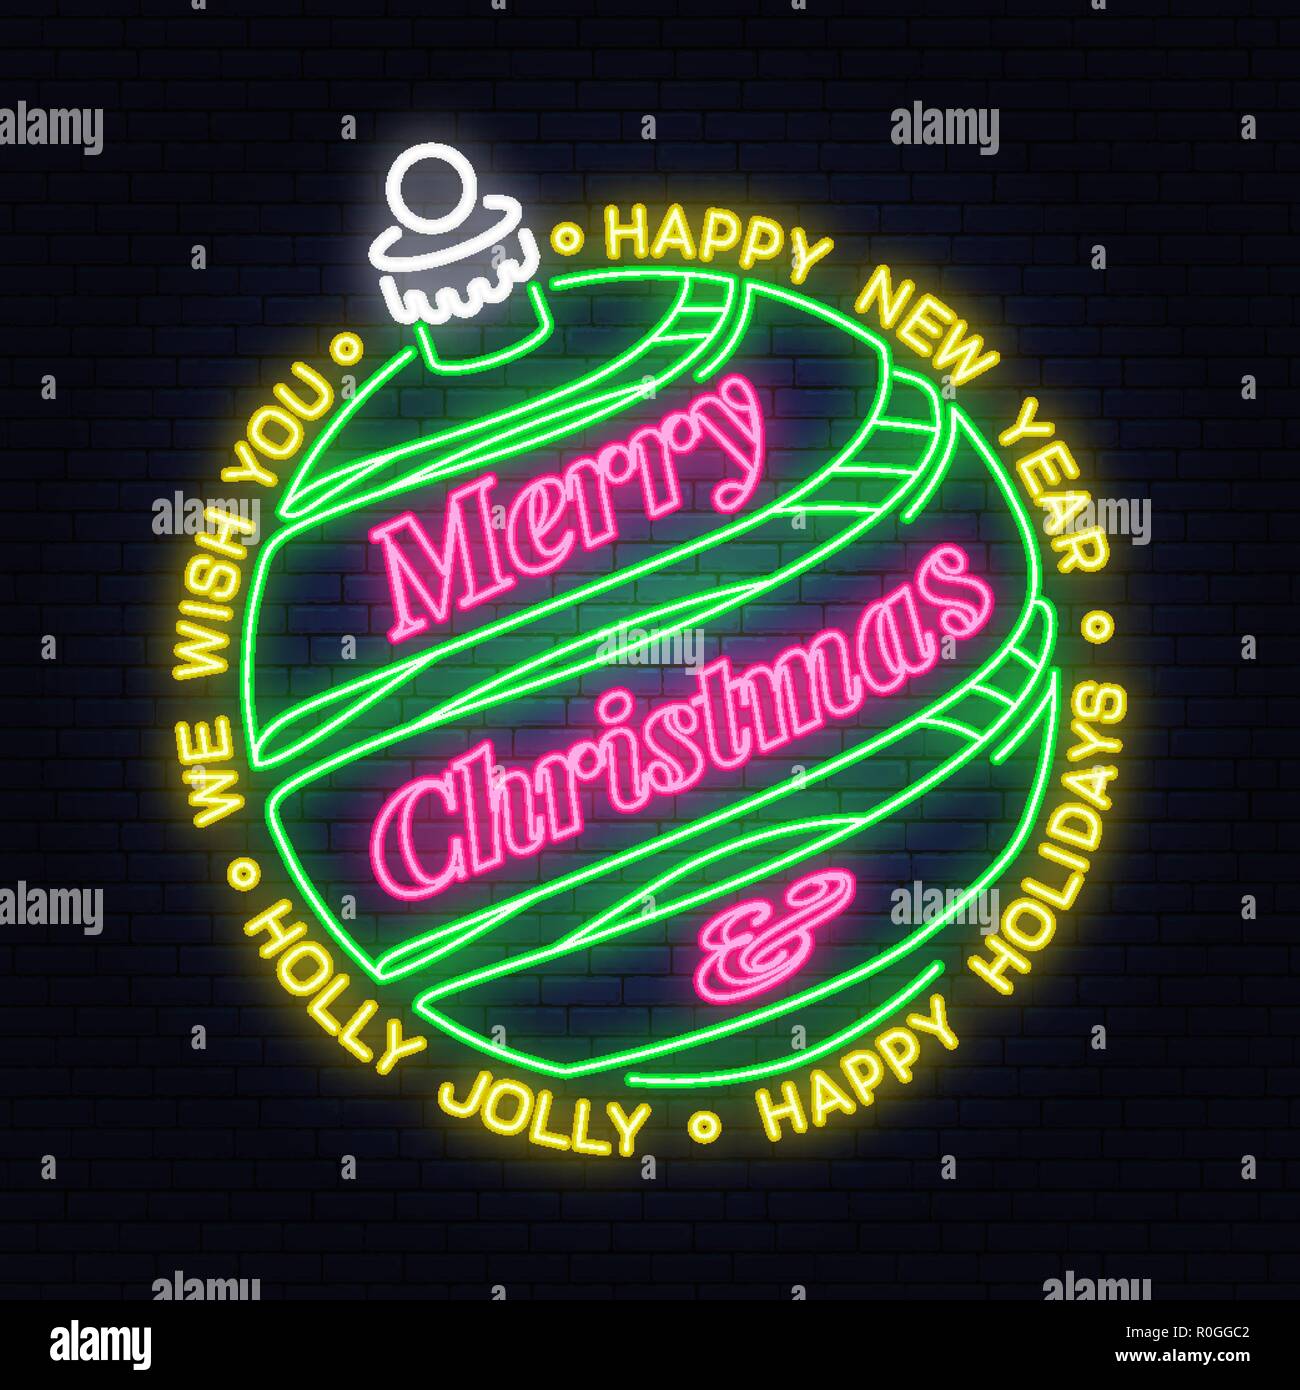 Le deseamos una muy Feliz Navidad y Próspero Año Nuevo cartel de neón con colgante campana de Navidad. Ilustración vectorial. Diseño de neón para navidad, año nuevo emblema luminoso cartel, banner de luz. Noche cartel Ilustración del Vector